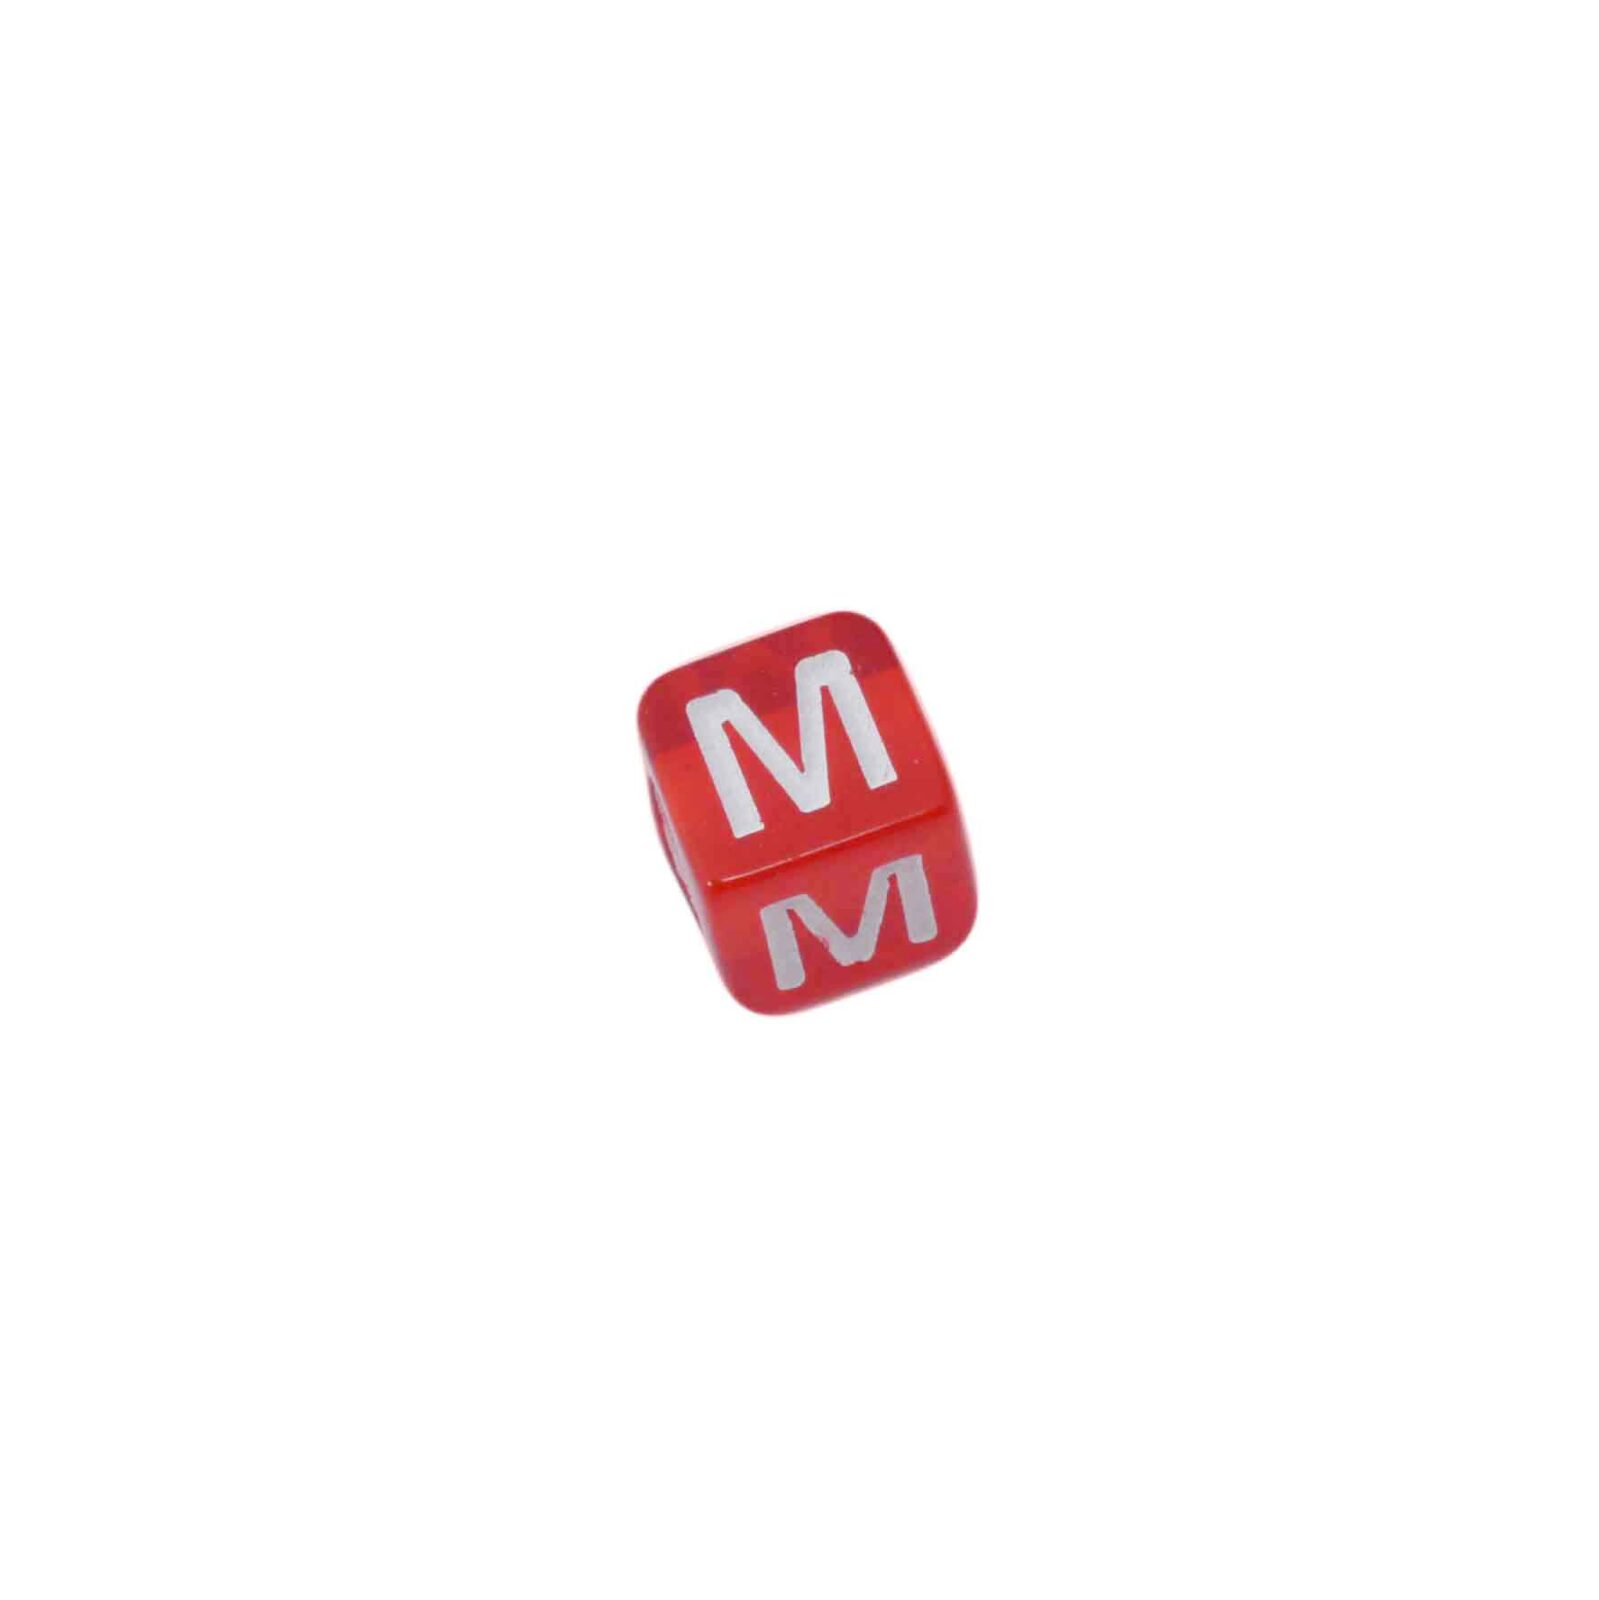 Rode letterkraal M